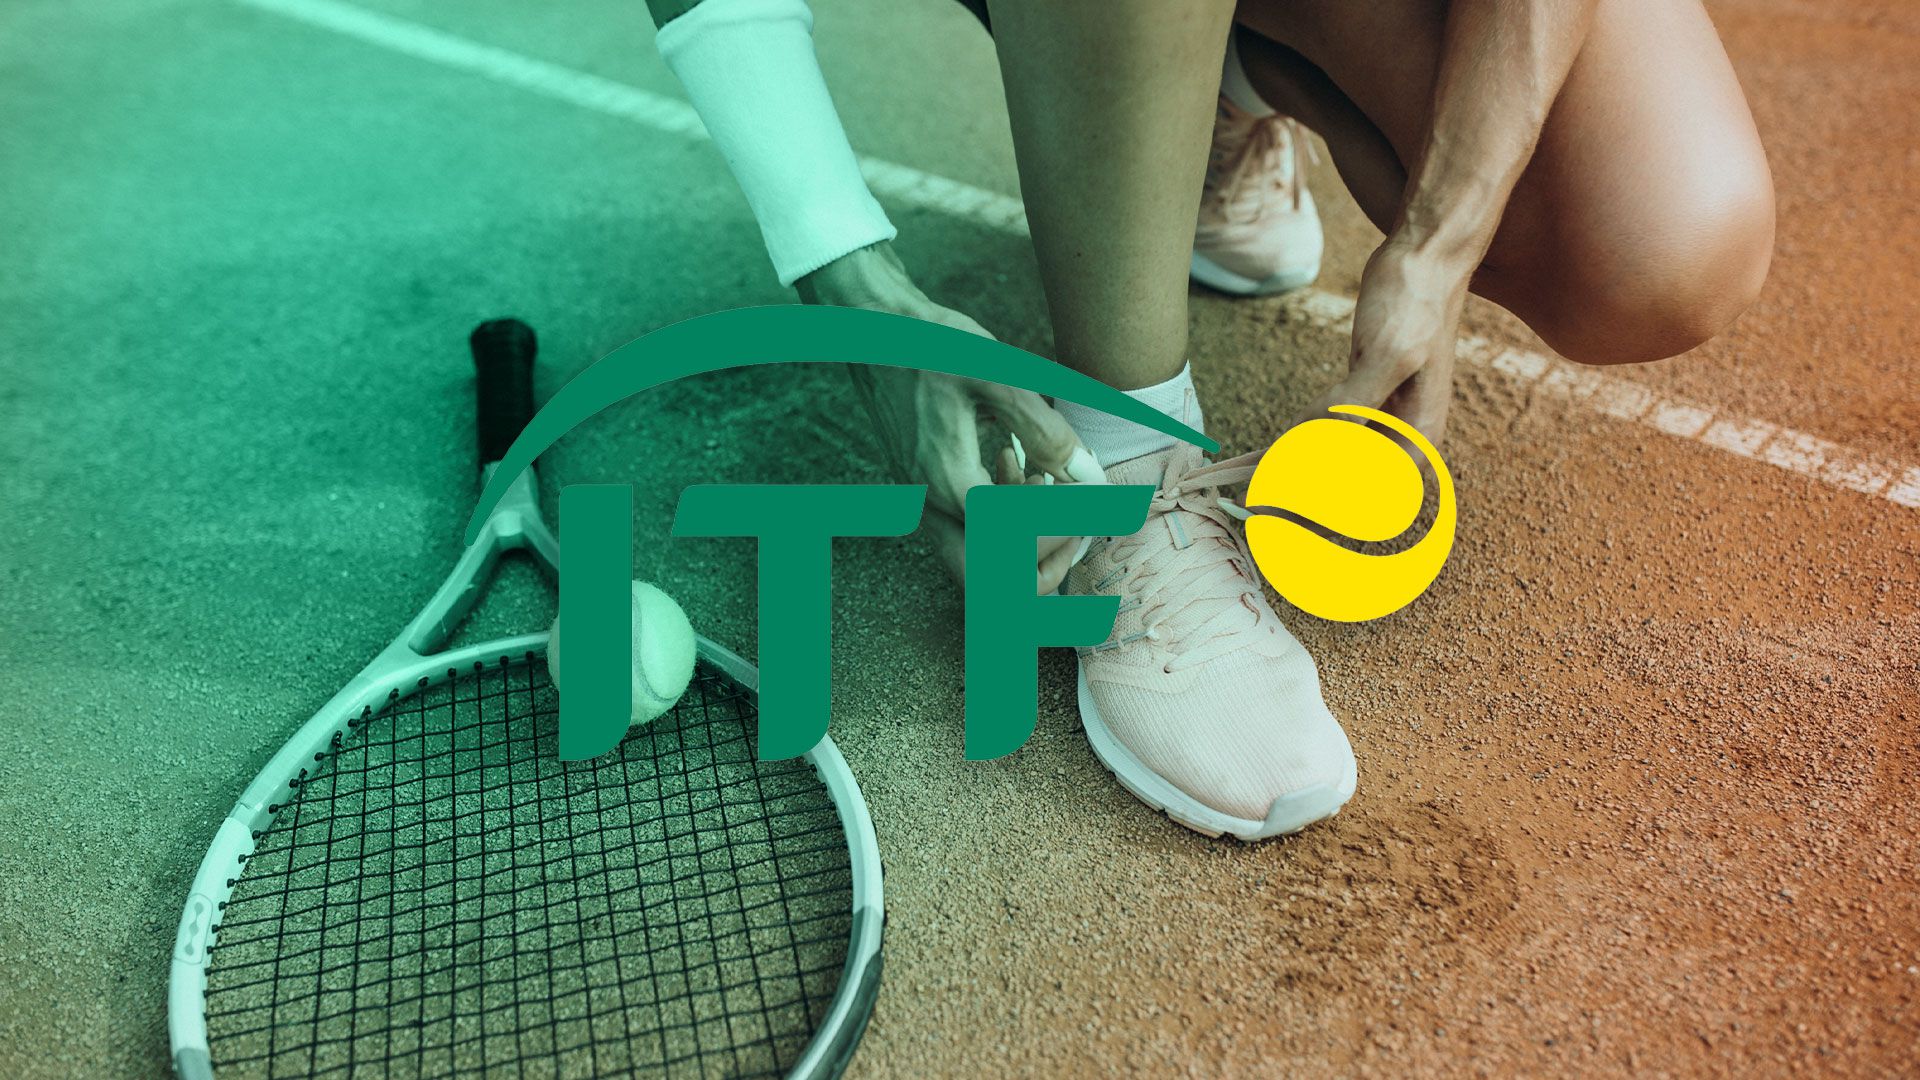 La Federación Internacional de Tenis (ITF) es el organismo rector del tenis mundial. (Infobae)